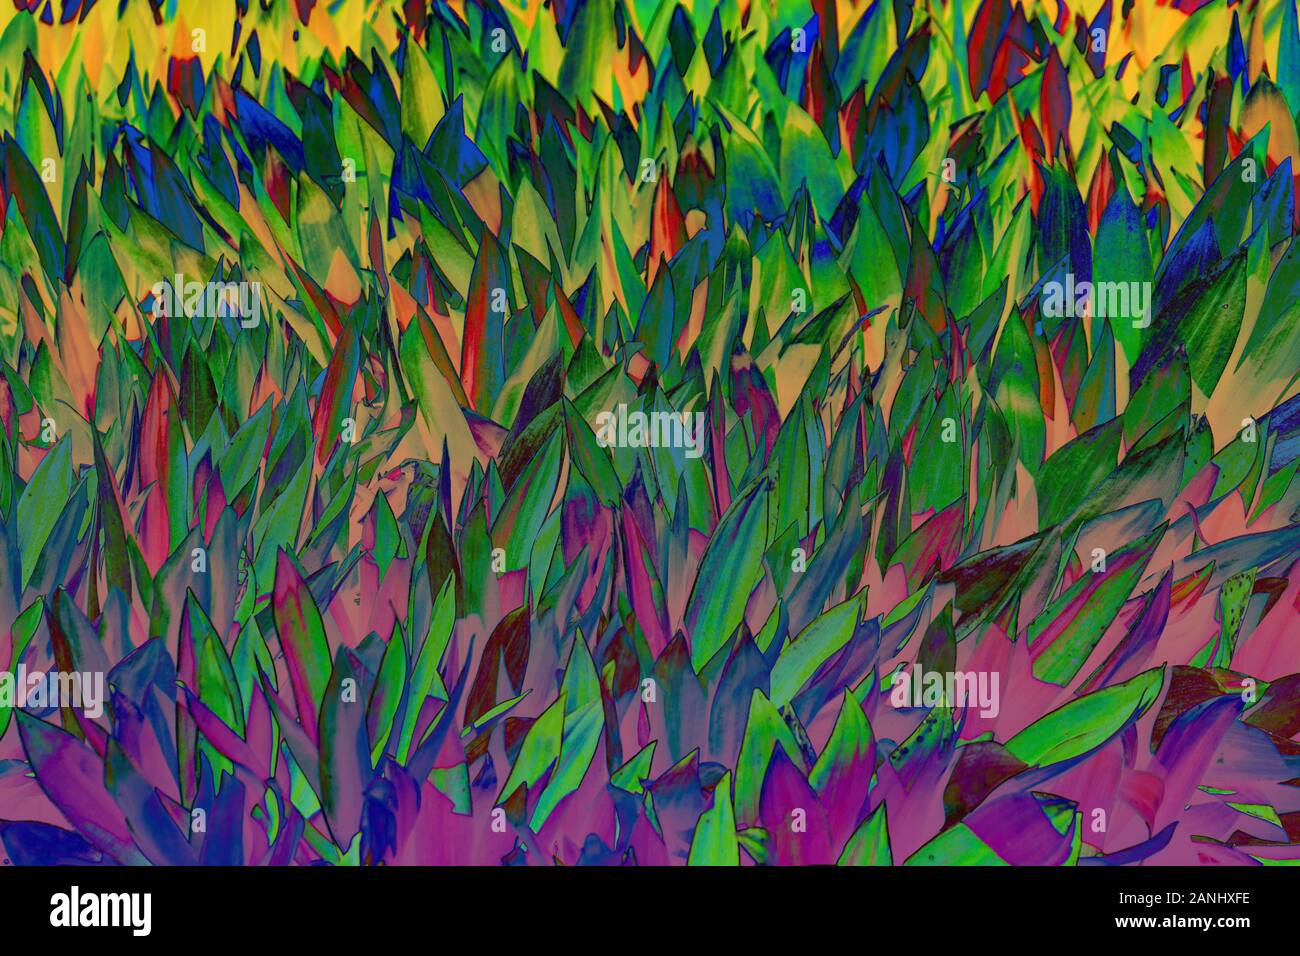 Belles feuilles tropicaux colorés. Concept d'été. L'Afrique, l'île de Zanzibar. Cordyline fruticosa Ti plante ou feuilles, feuillages exotiques colorées. Banque D'Images